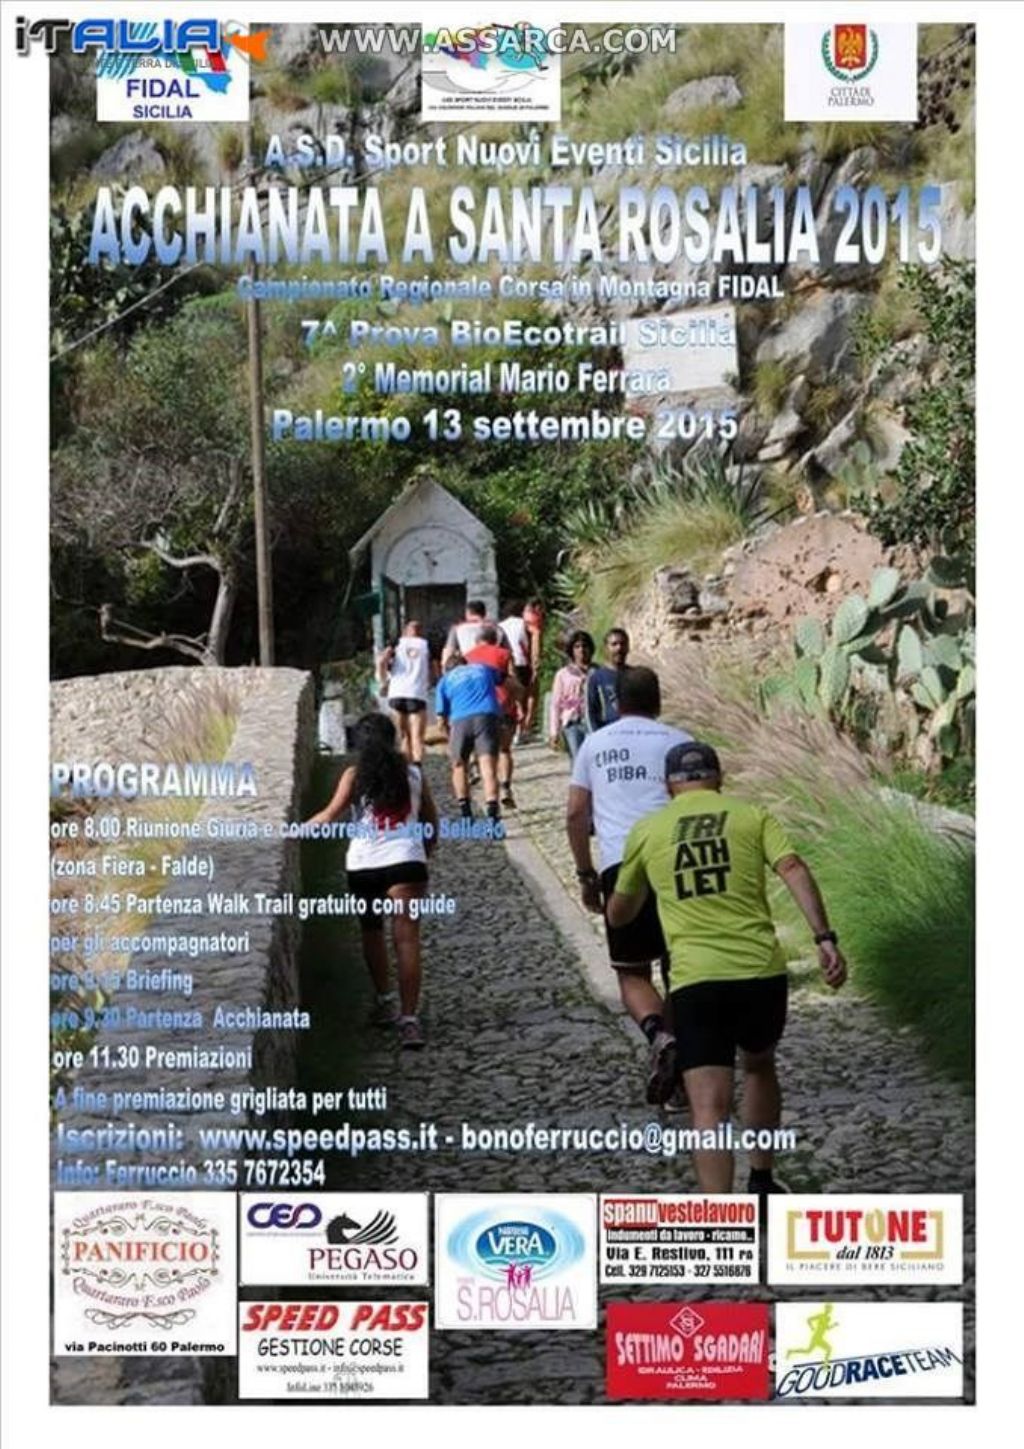 Al grido di "Viva Palermo e Santa Rosalia"  si corre domenica   l’Acchianata a Santa Rosalia,  in palio i titoli di Campione Siciliano Fidal di Corsa in Montagna